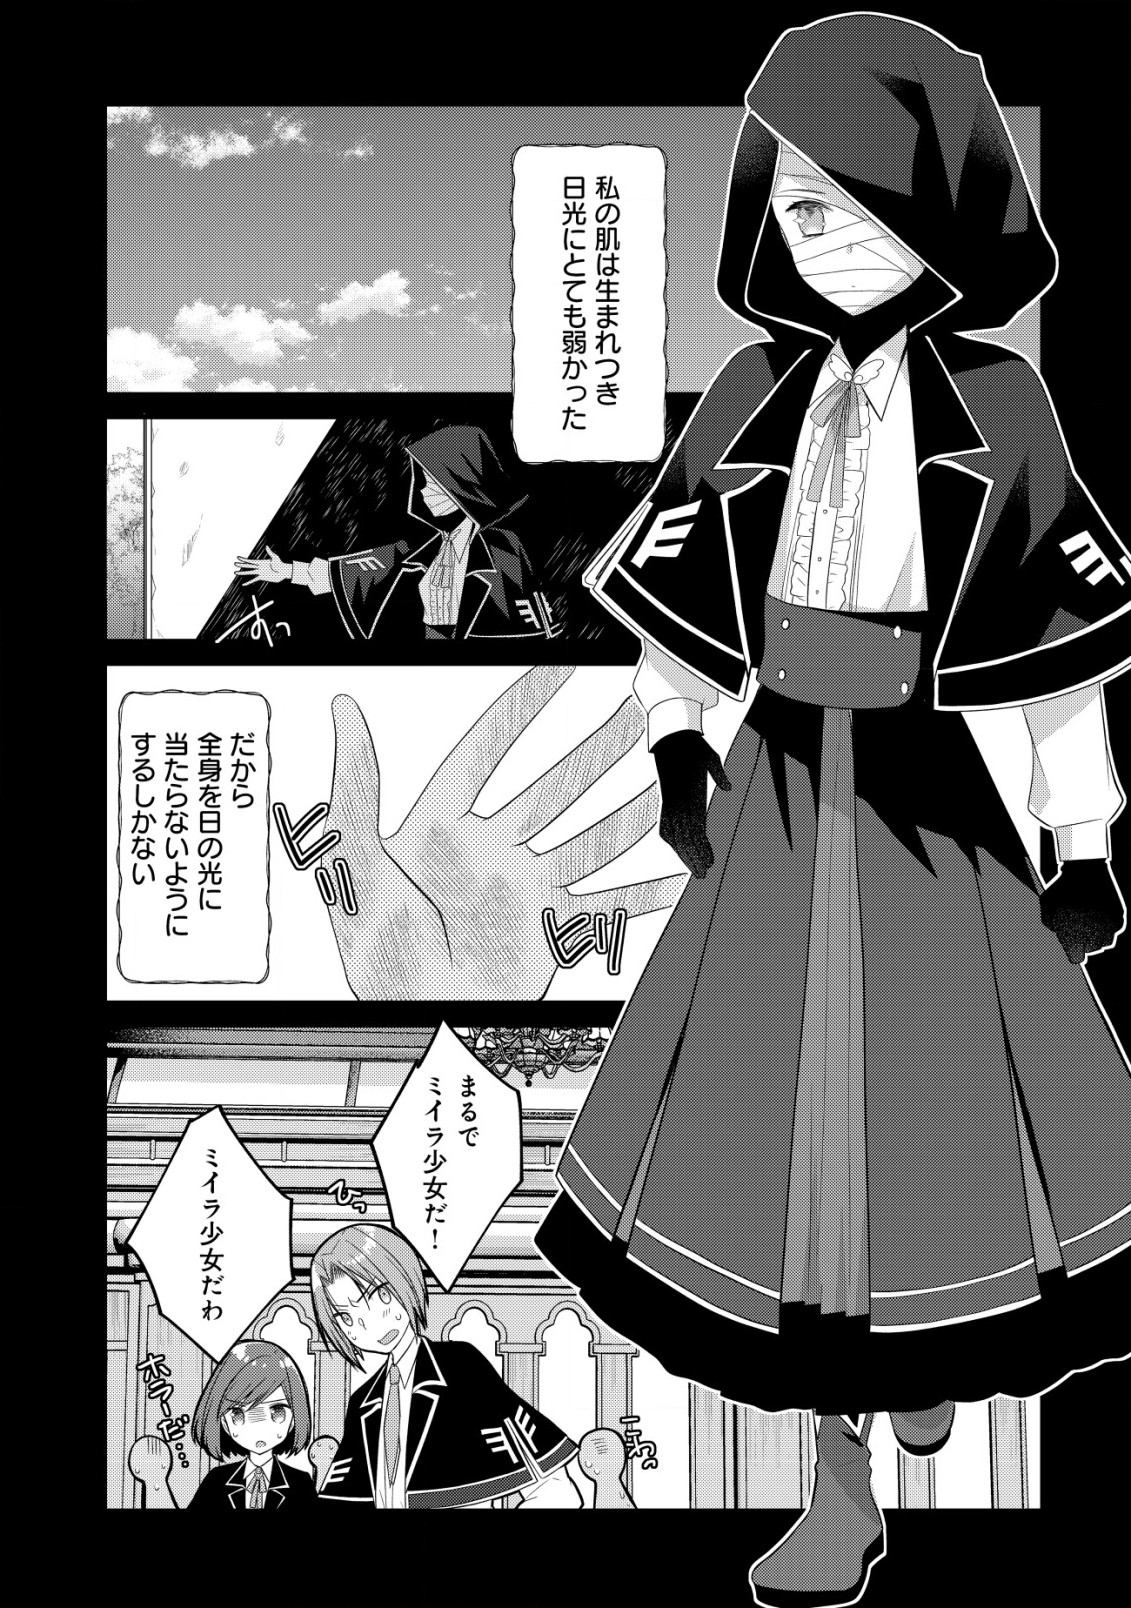 Jagaimo Nouka no Muramusume, Kenshin to Utawareru Made. - Chapter 14 - Page 4